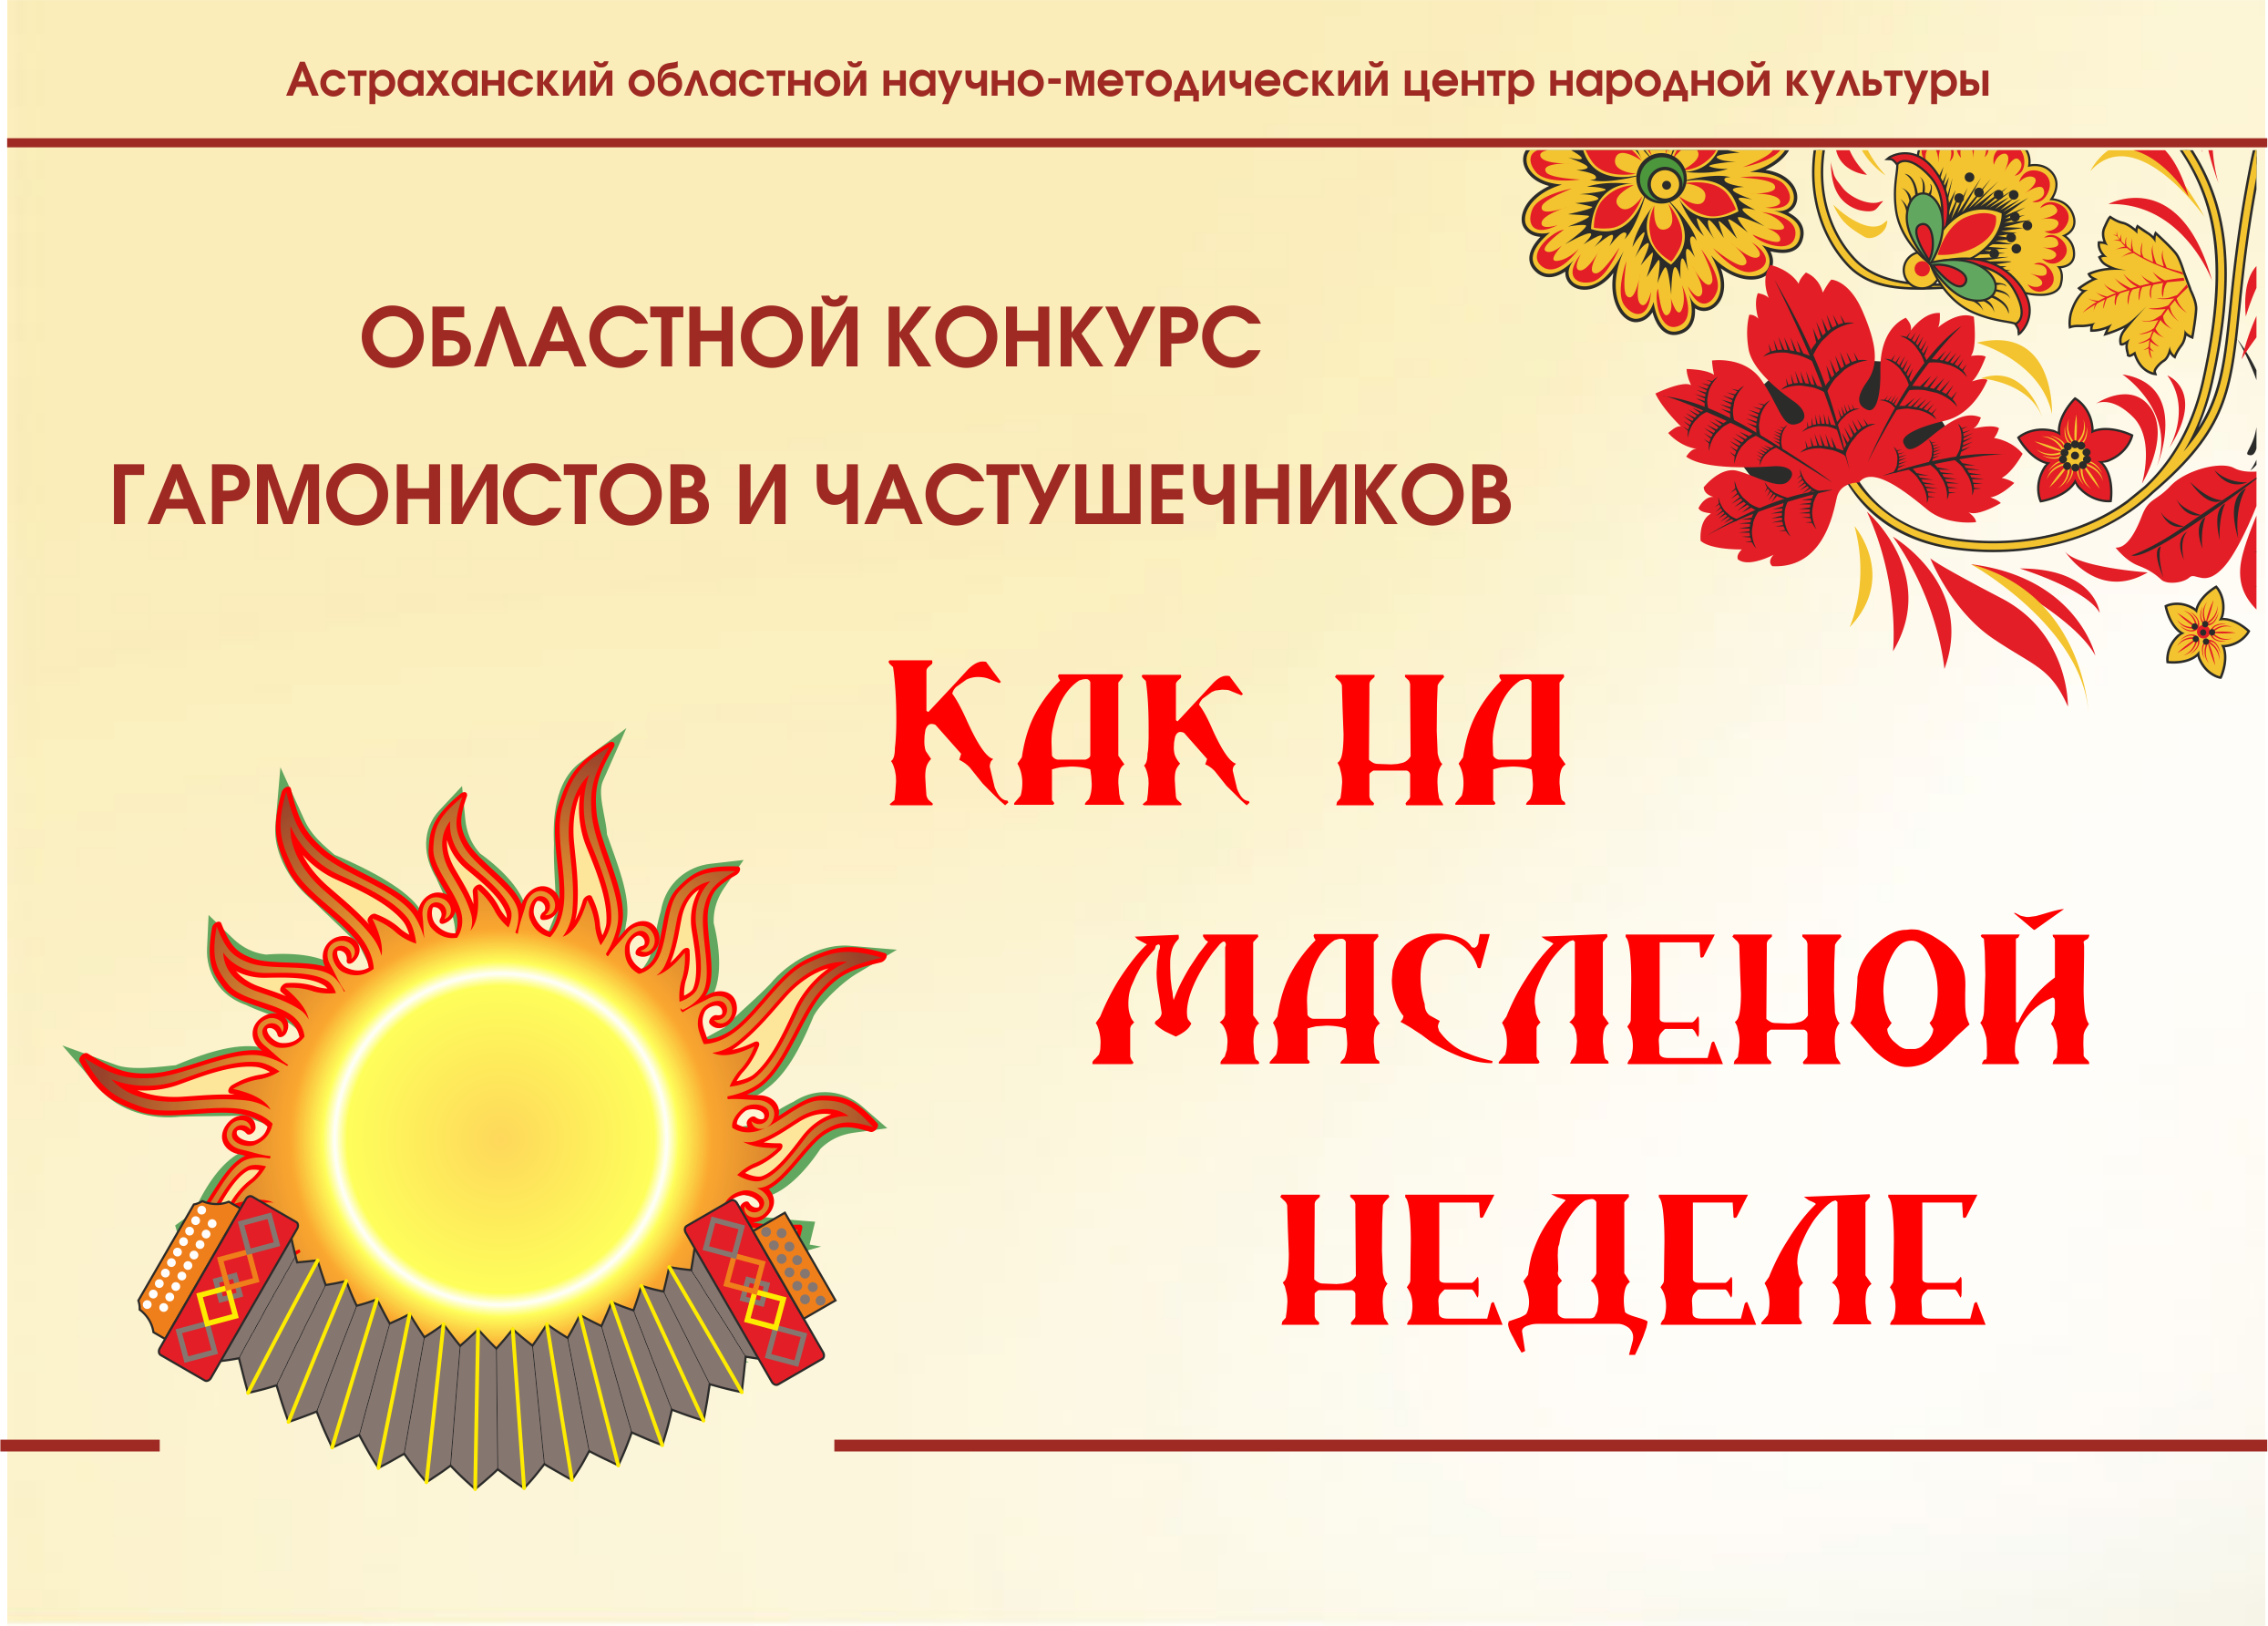 В Астрахани объявлен конкурс гармонистов и частушечников «Как на Масленой неделе»